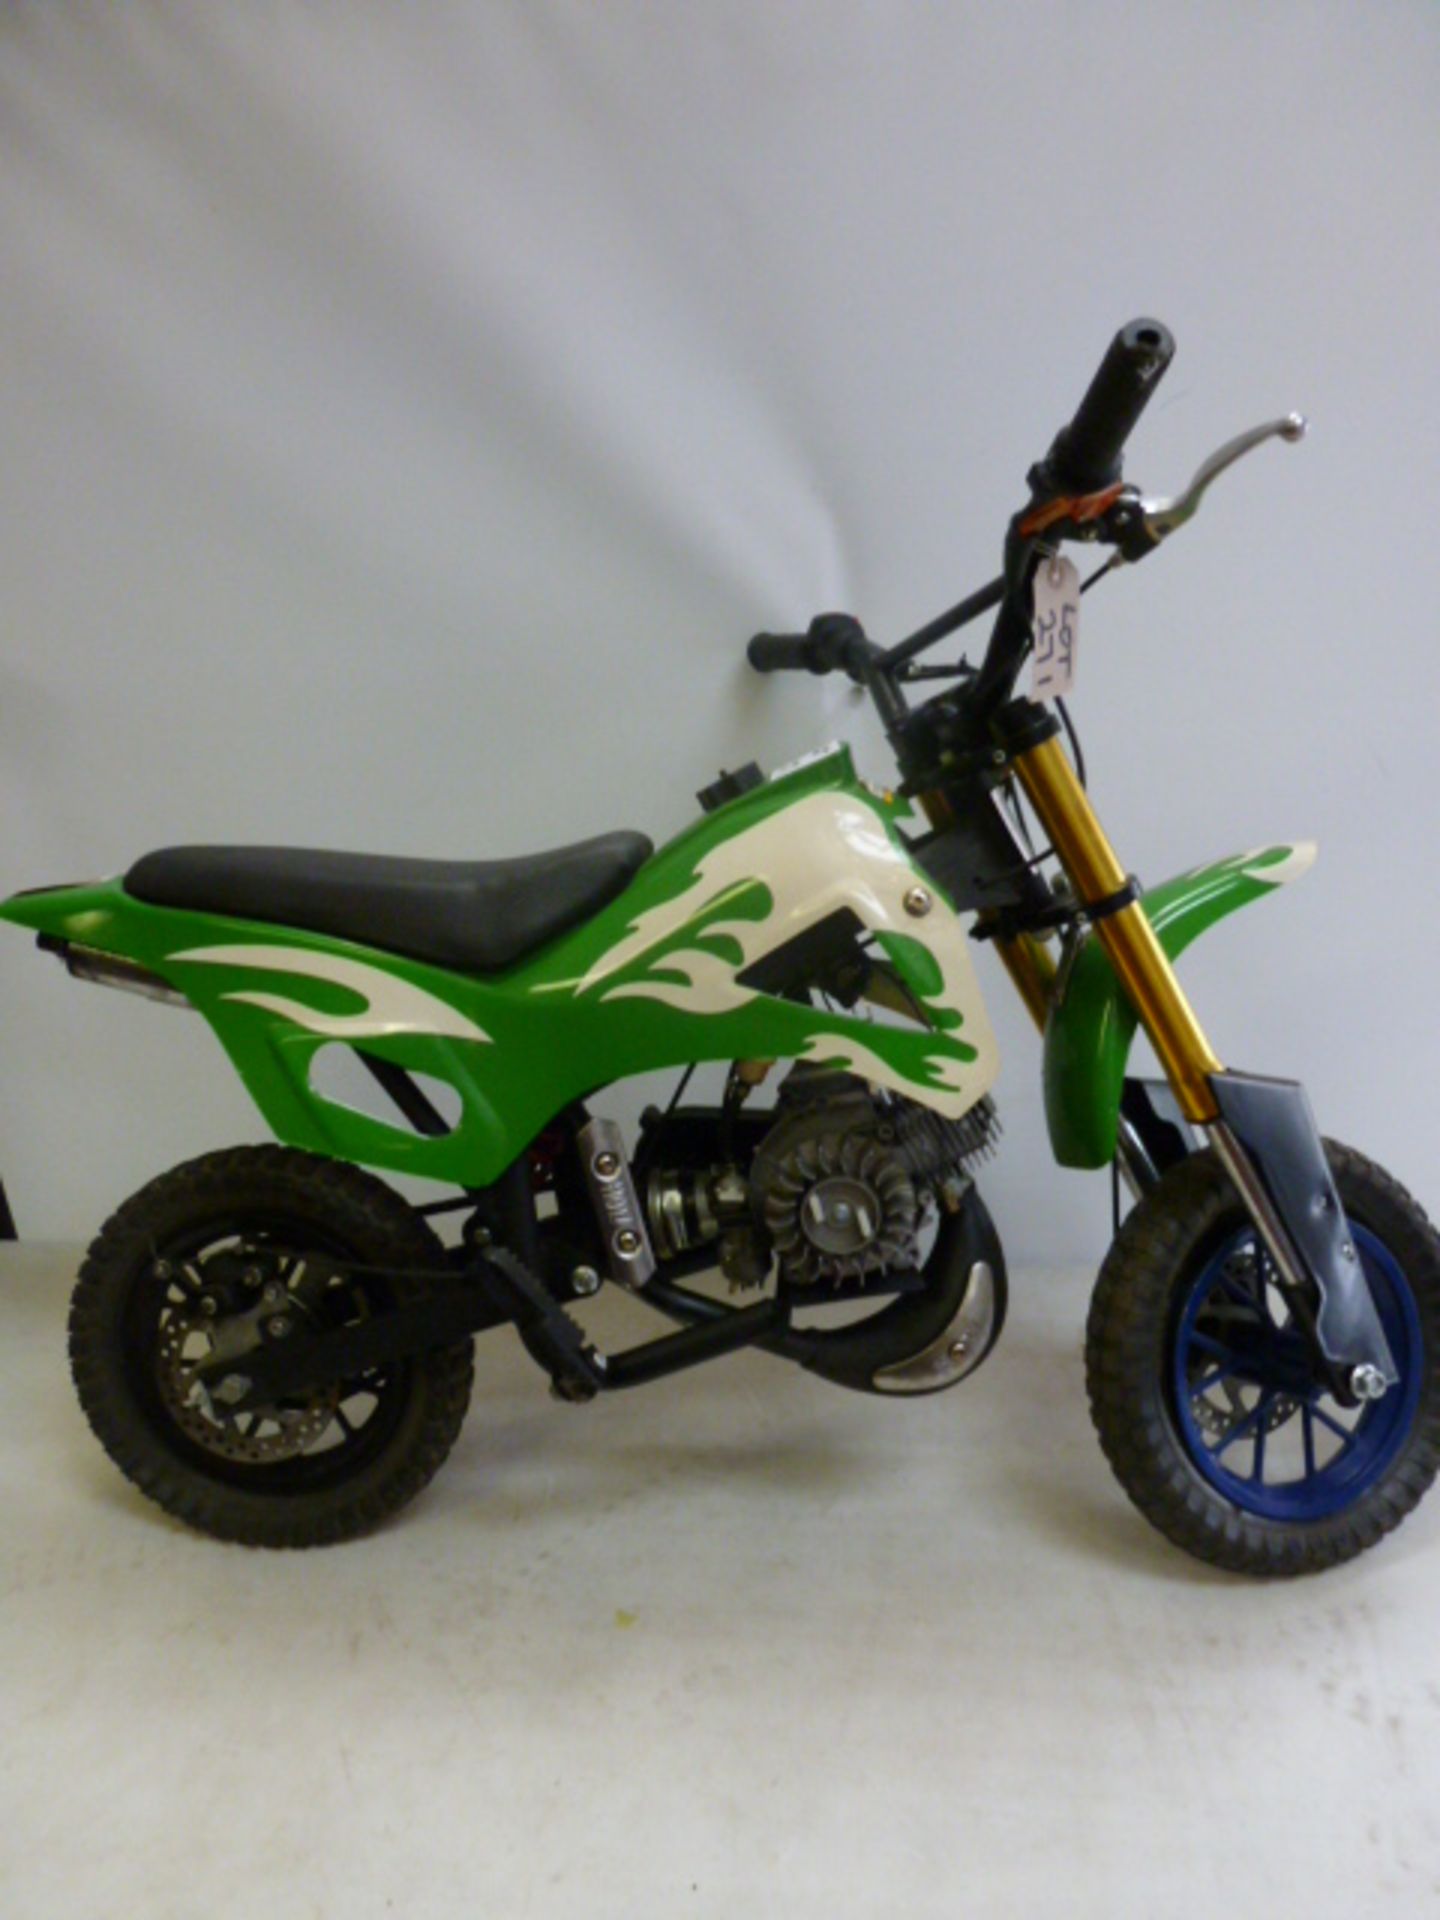 ZHEJING LYAA Company Ltd Mini Petrol Pit/Dirt Bike in Green with White Flame, Model MD01/MD03,